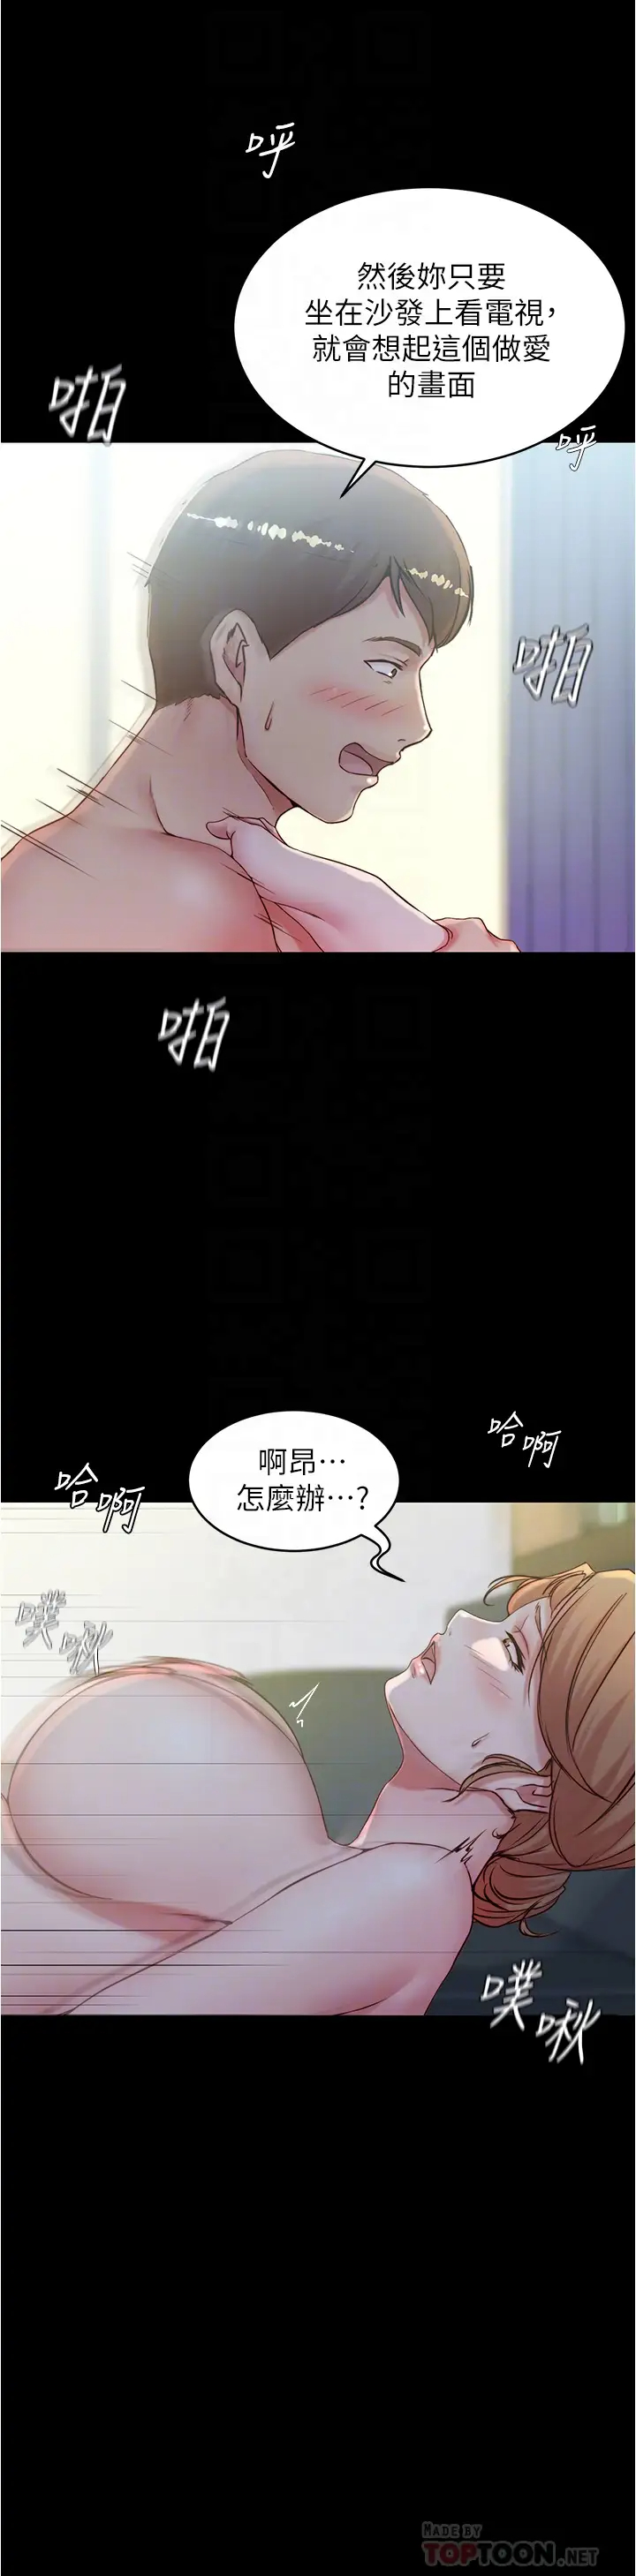 韩国污漫画 小褲褲筆記 第37话 开始跟张穗桦同居 14